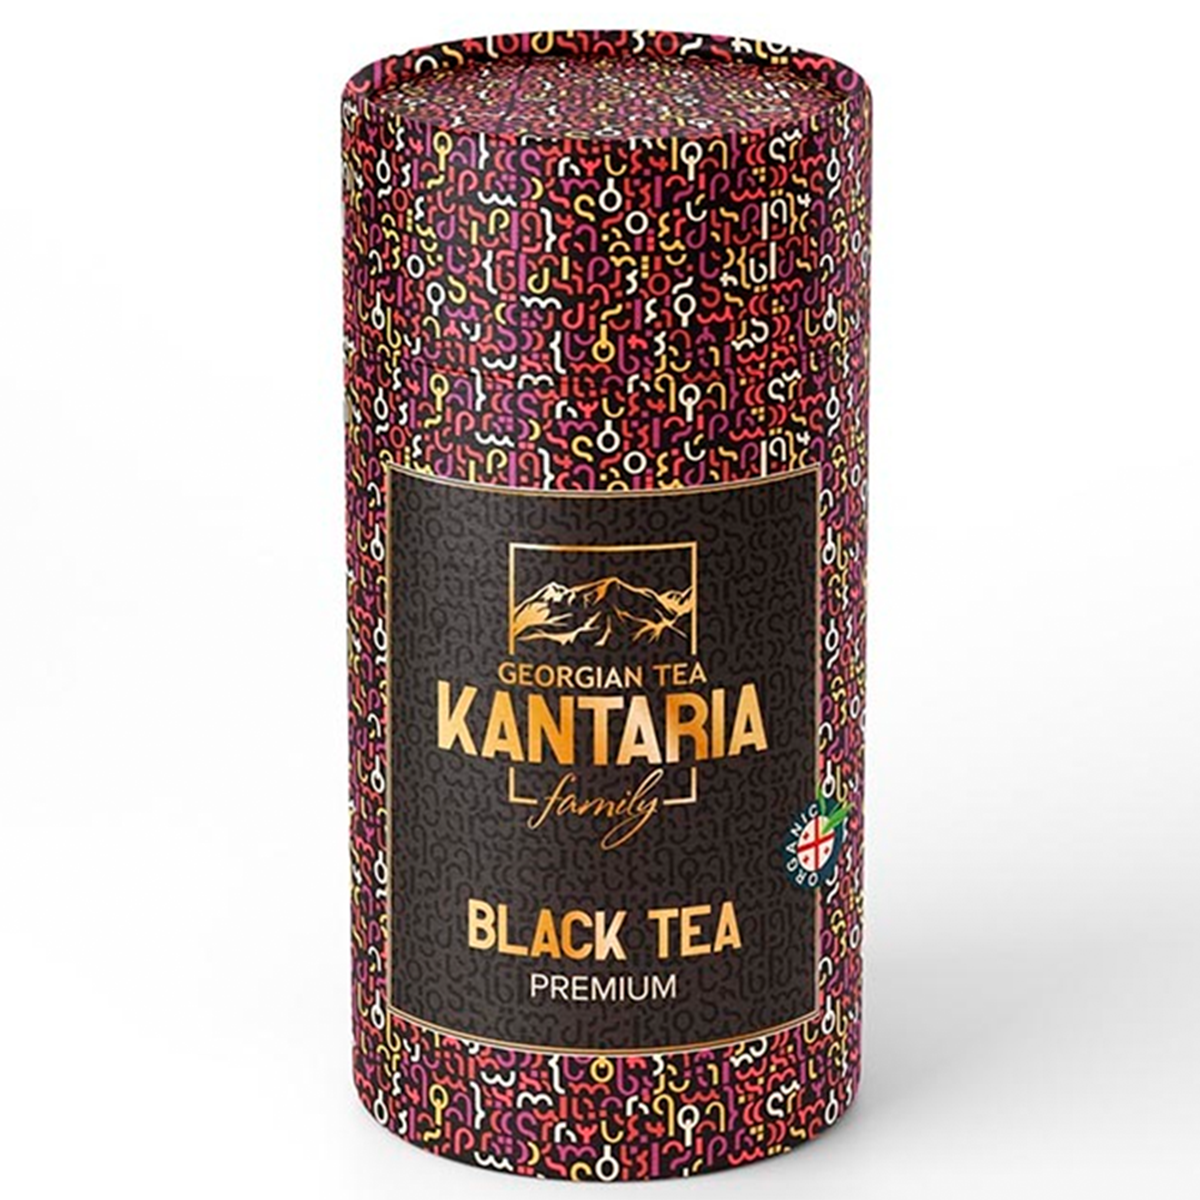 Черный крупнолистовой чай KANTARIA премиум в тубе - фото 1